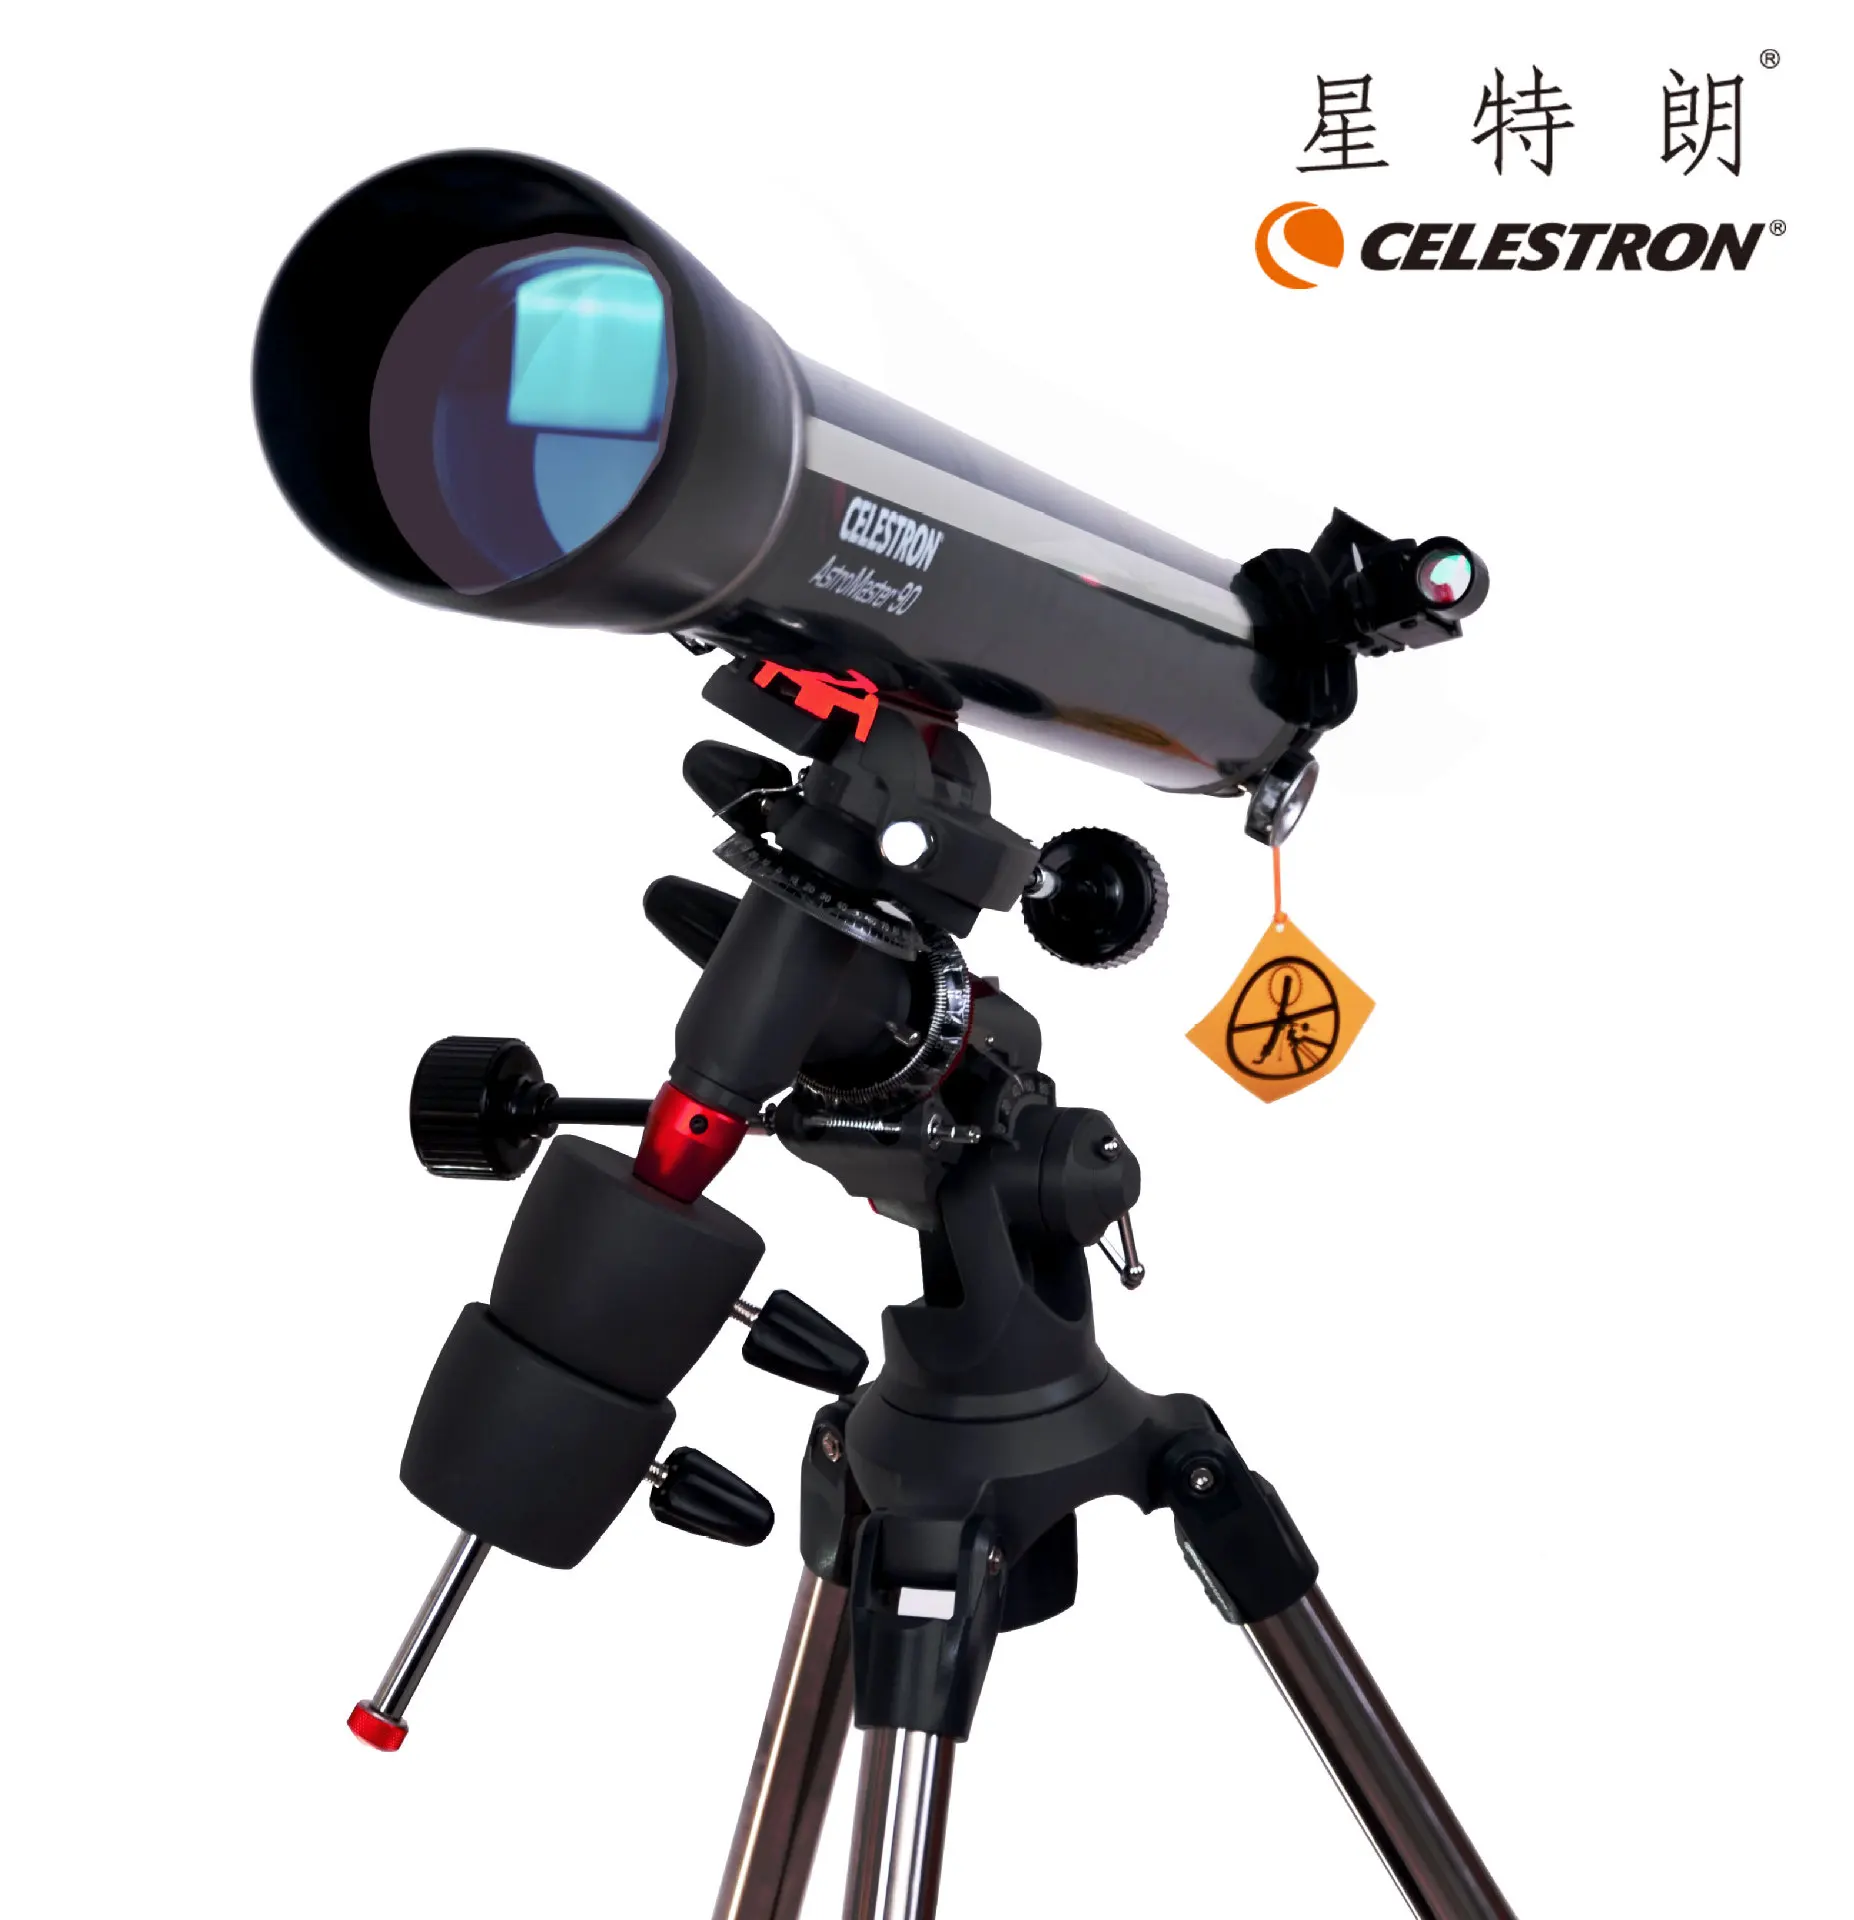 

Celestron Профессиональный AstroMaster 90EQ Ахроматический рефракторный астрономический телескоп с CG-3 Экваториальным креплением #21064